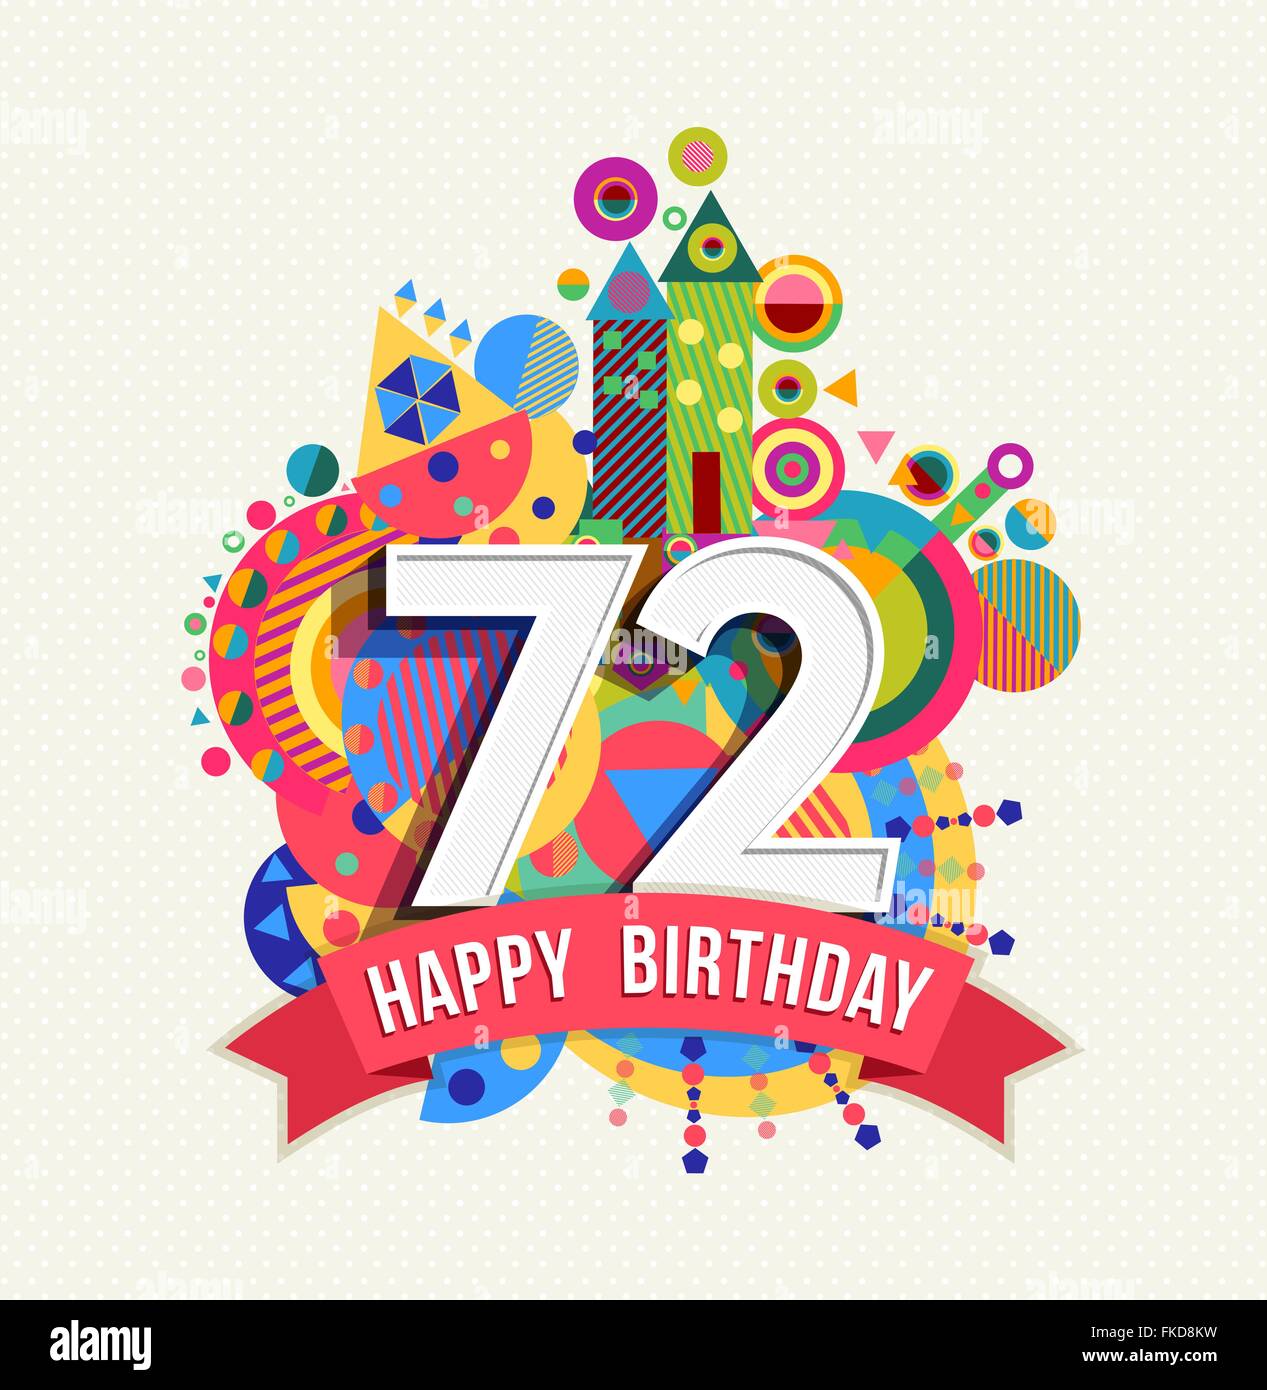 Happy Birthday zweiundsiebzig 72 Jahr Spaß Feier Geburtstag Grußkarte mit Nummer, Beschriftung und bunte Geometrie Stock Vektor